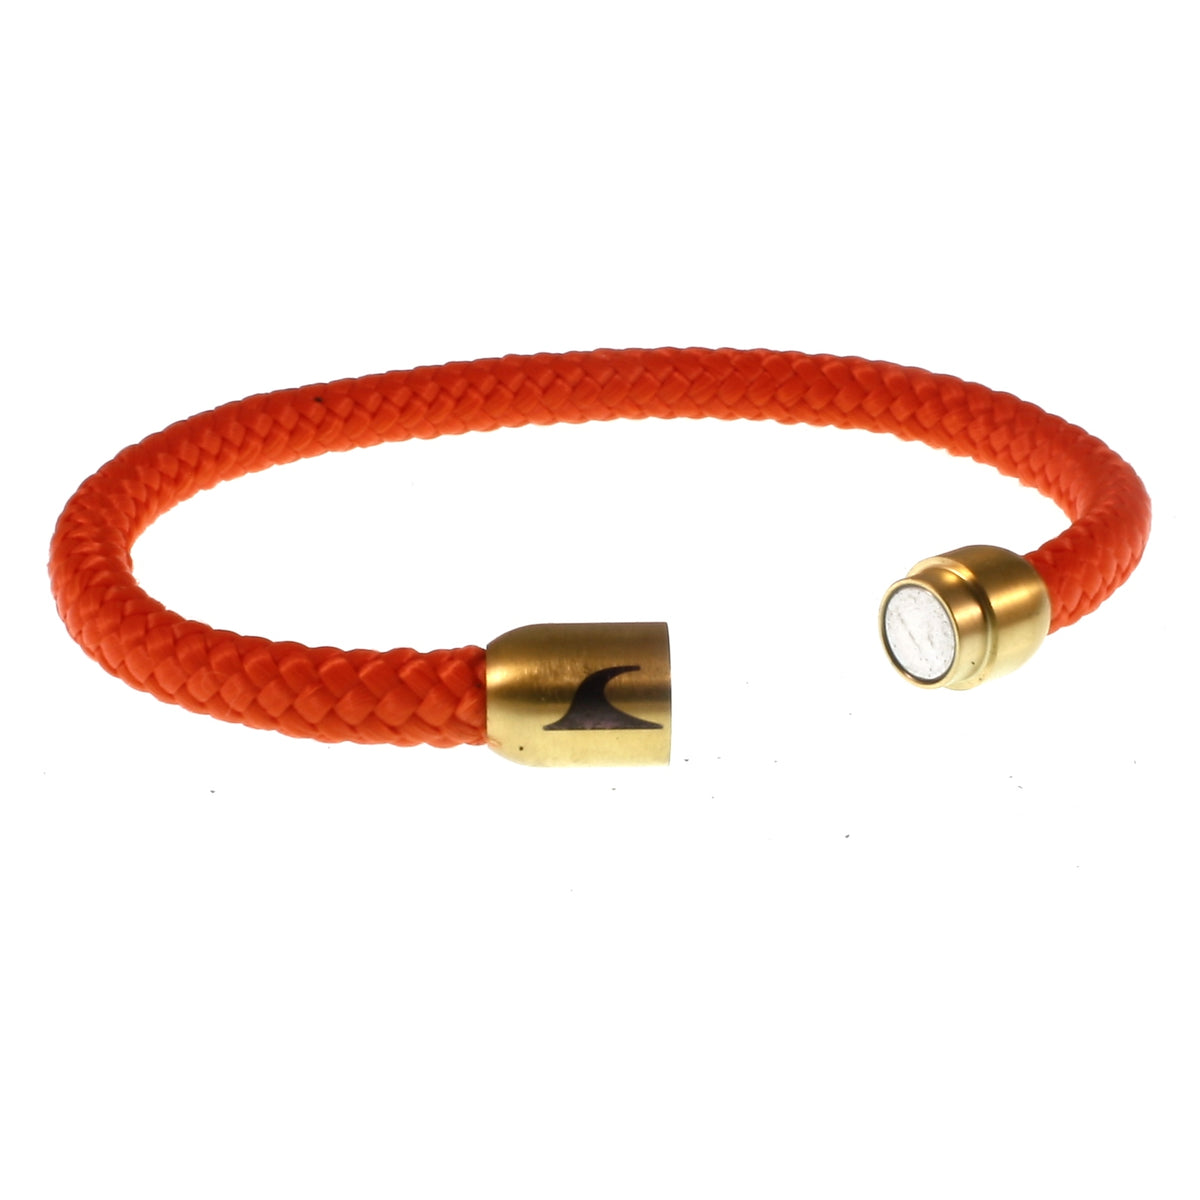 Herren-segeltau-armband-damen-sylt-orange-gold-geflochten-Edelstahlverschluss-offen-wavepirate-shop-st